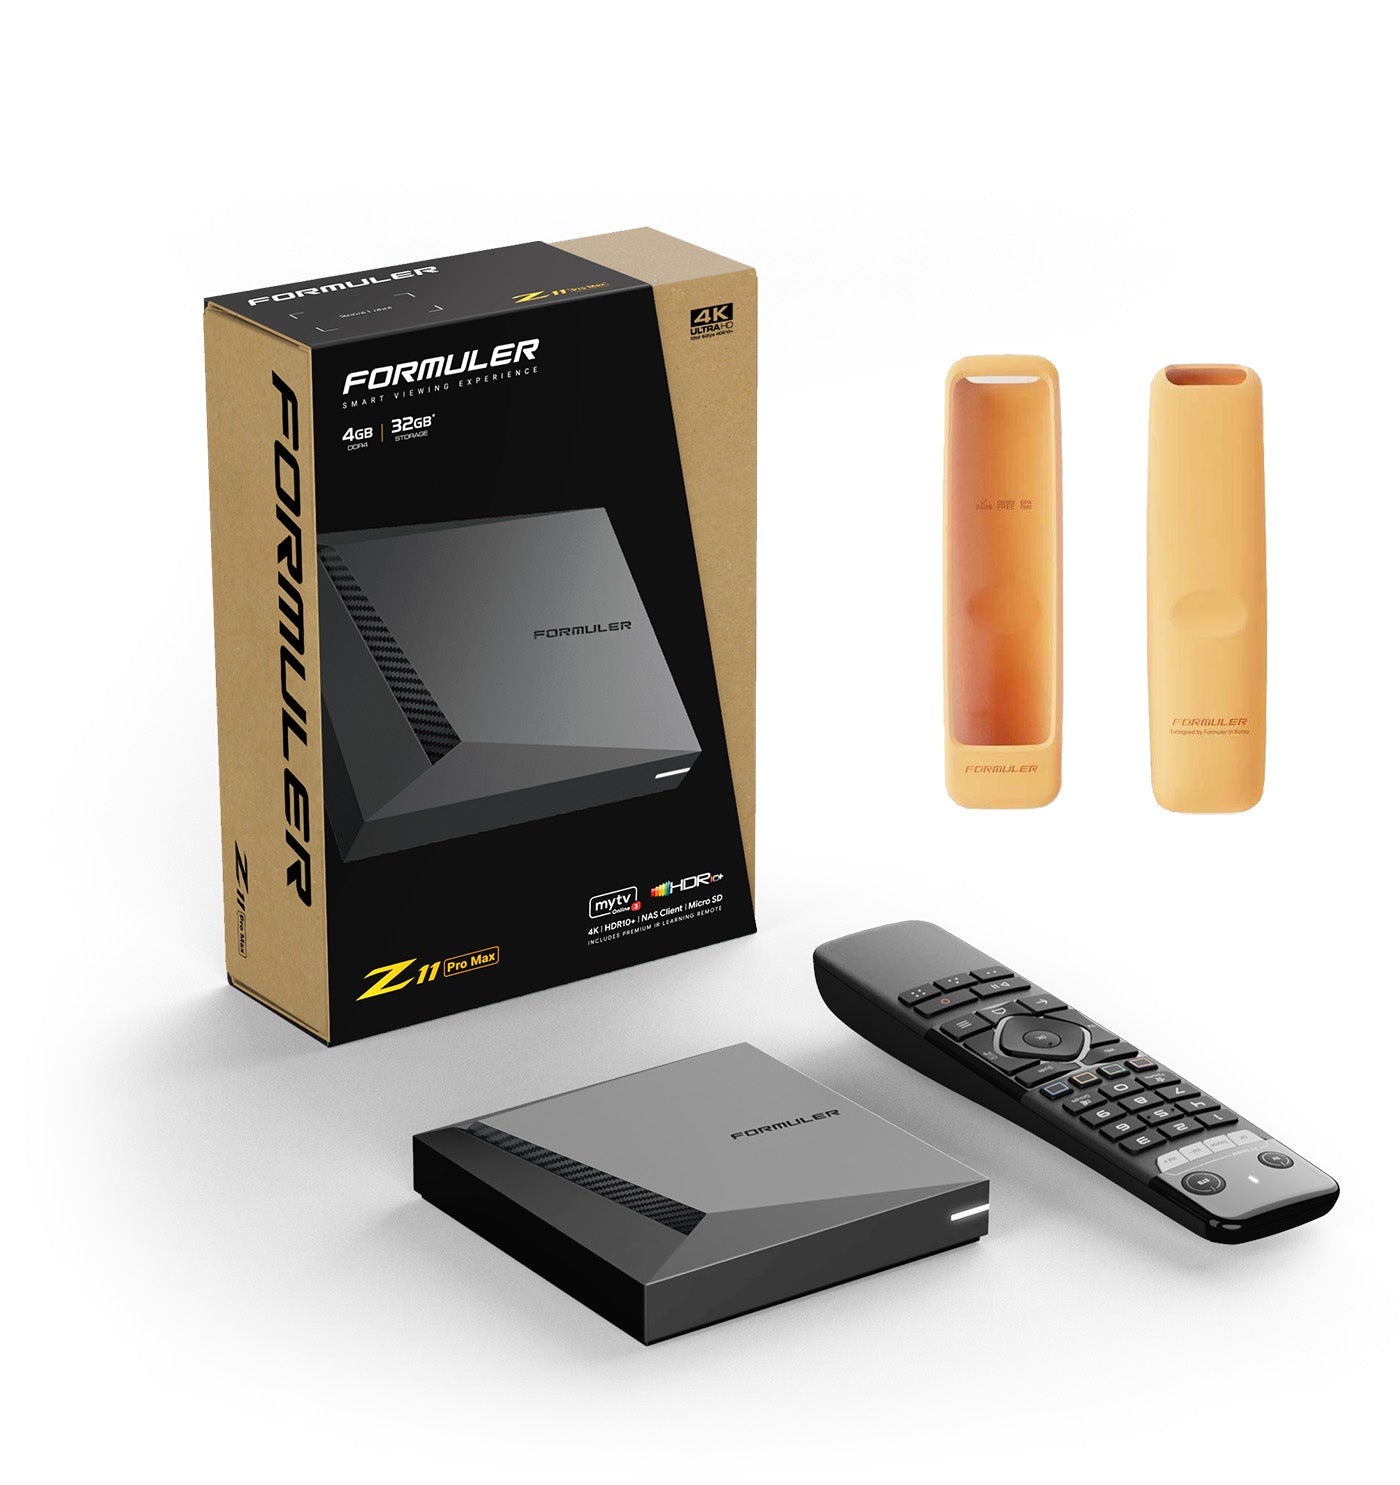 Formuler Z11 Pro Max + FREE ACCESSORY: 1x black remote cover